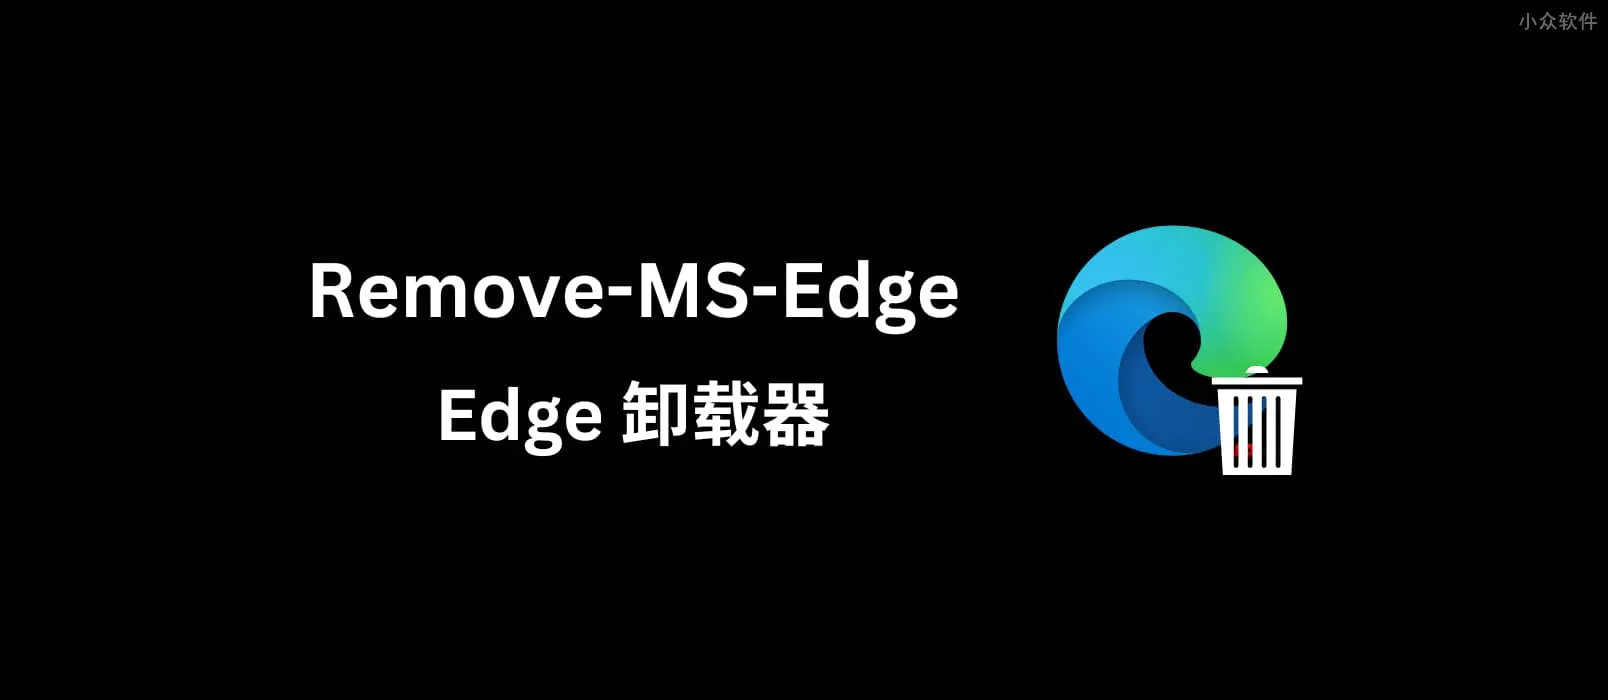 Remove-MS-Edge界面